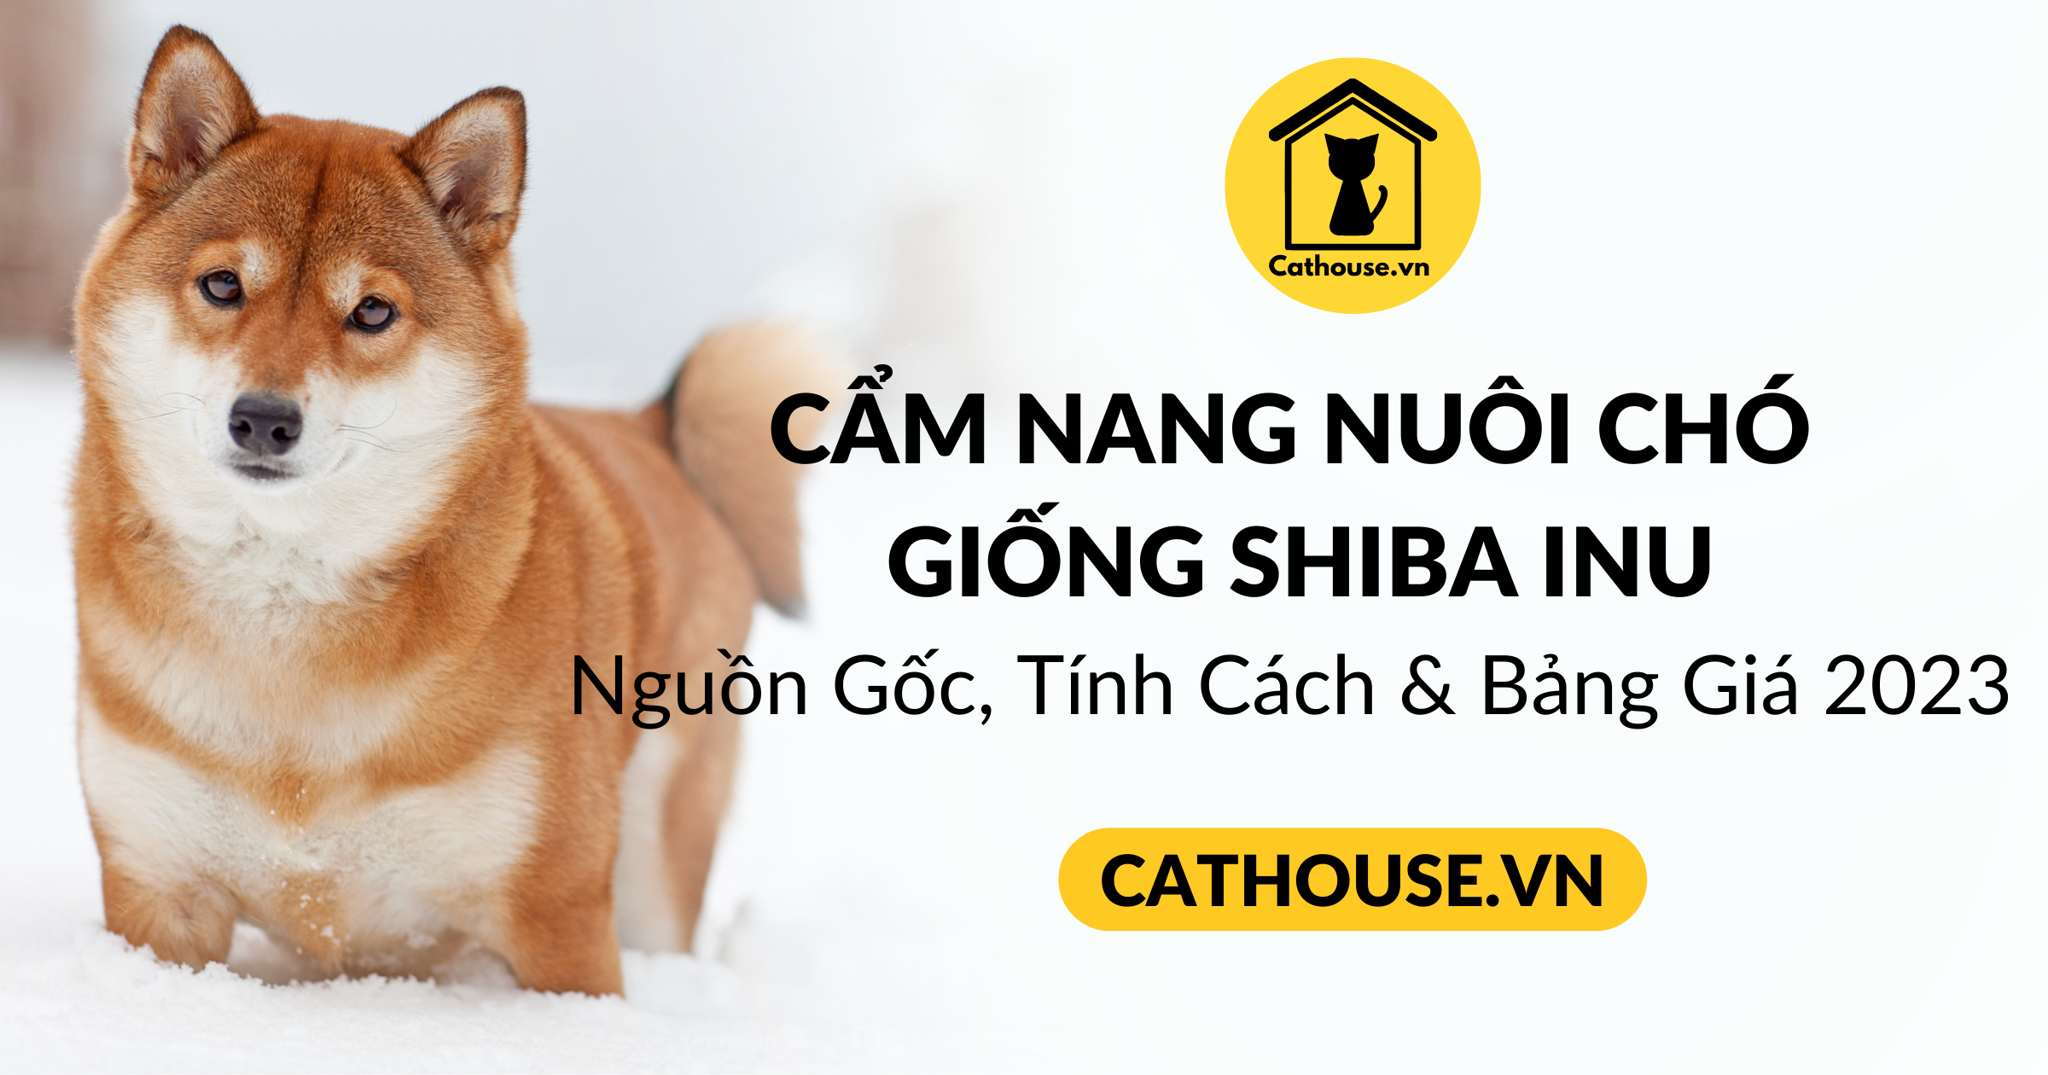 Cẩm nang chó Shiba: Nguồn gốc, đặc điểm, cách nuôi, giá bán